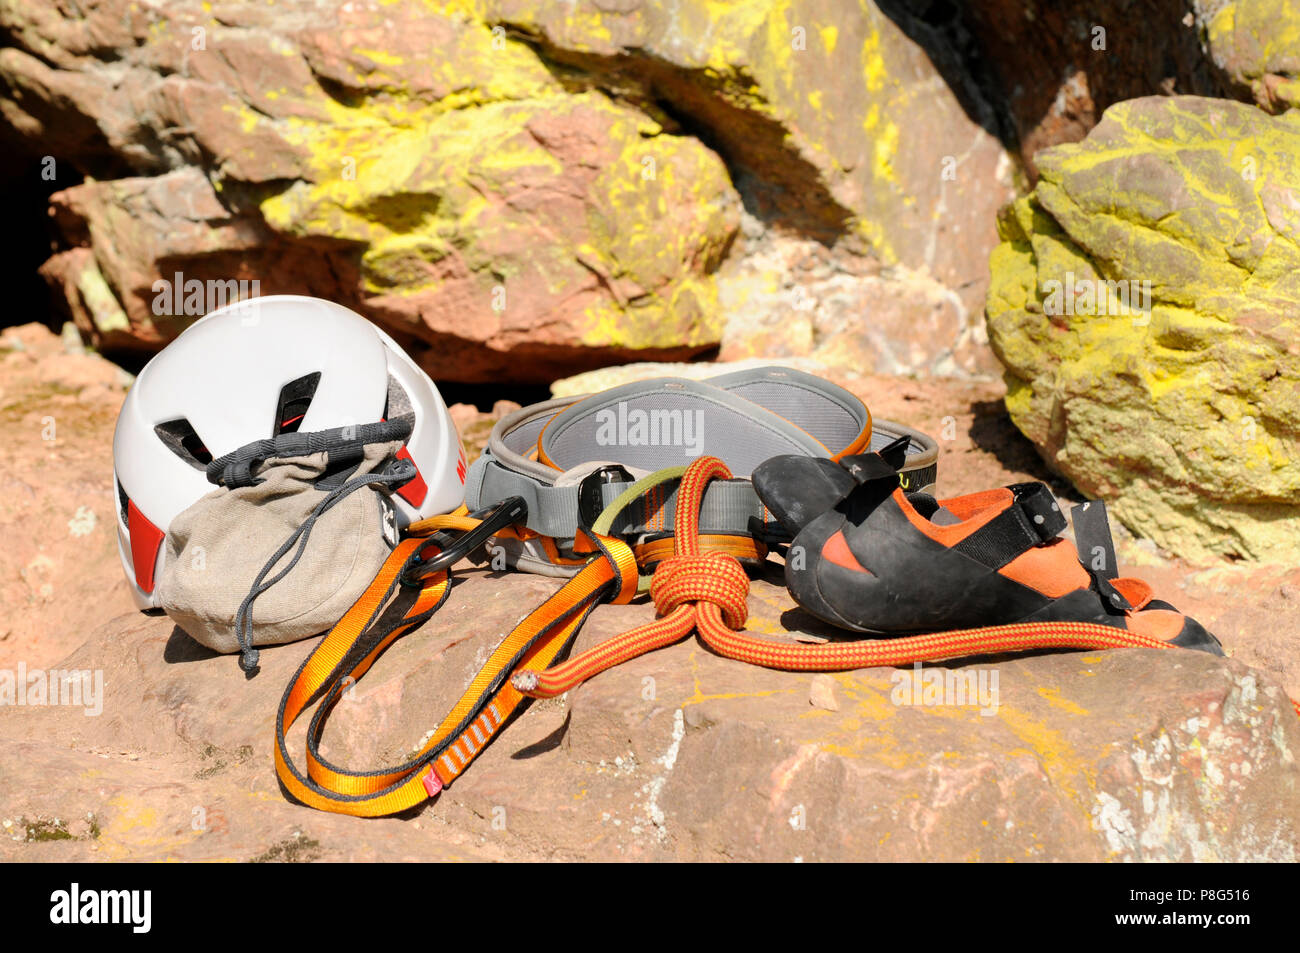 Climbing Equipment, rock climbing, climbing harness, webbing, figure-eight knot, helmet, climber's shoes Stock Photo